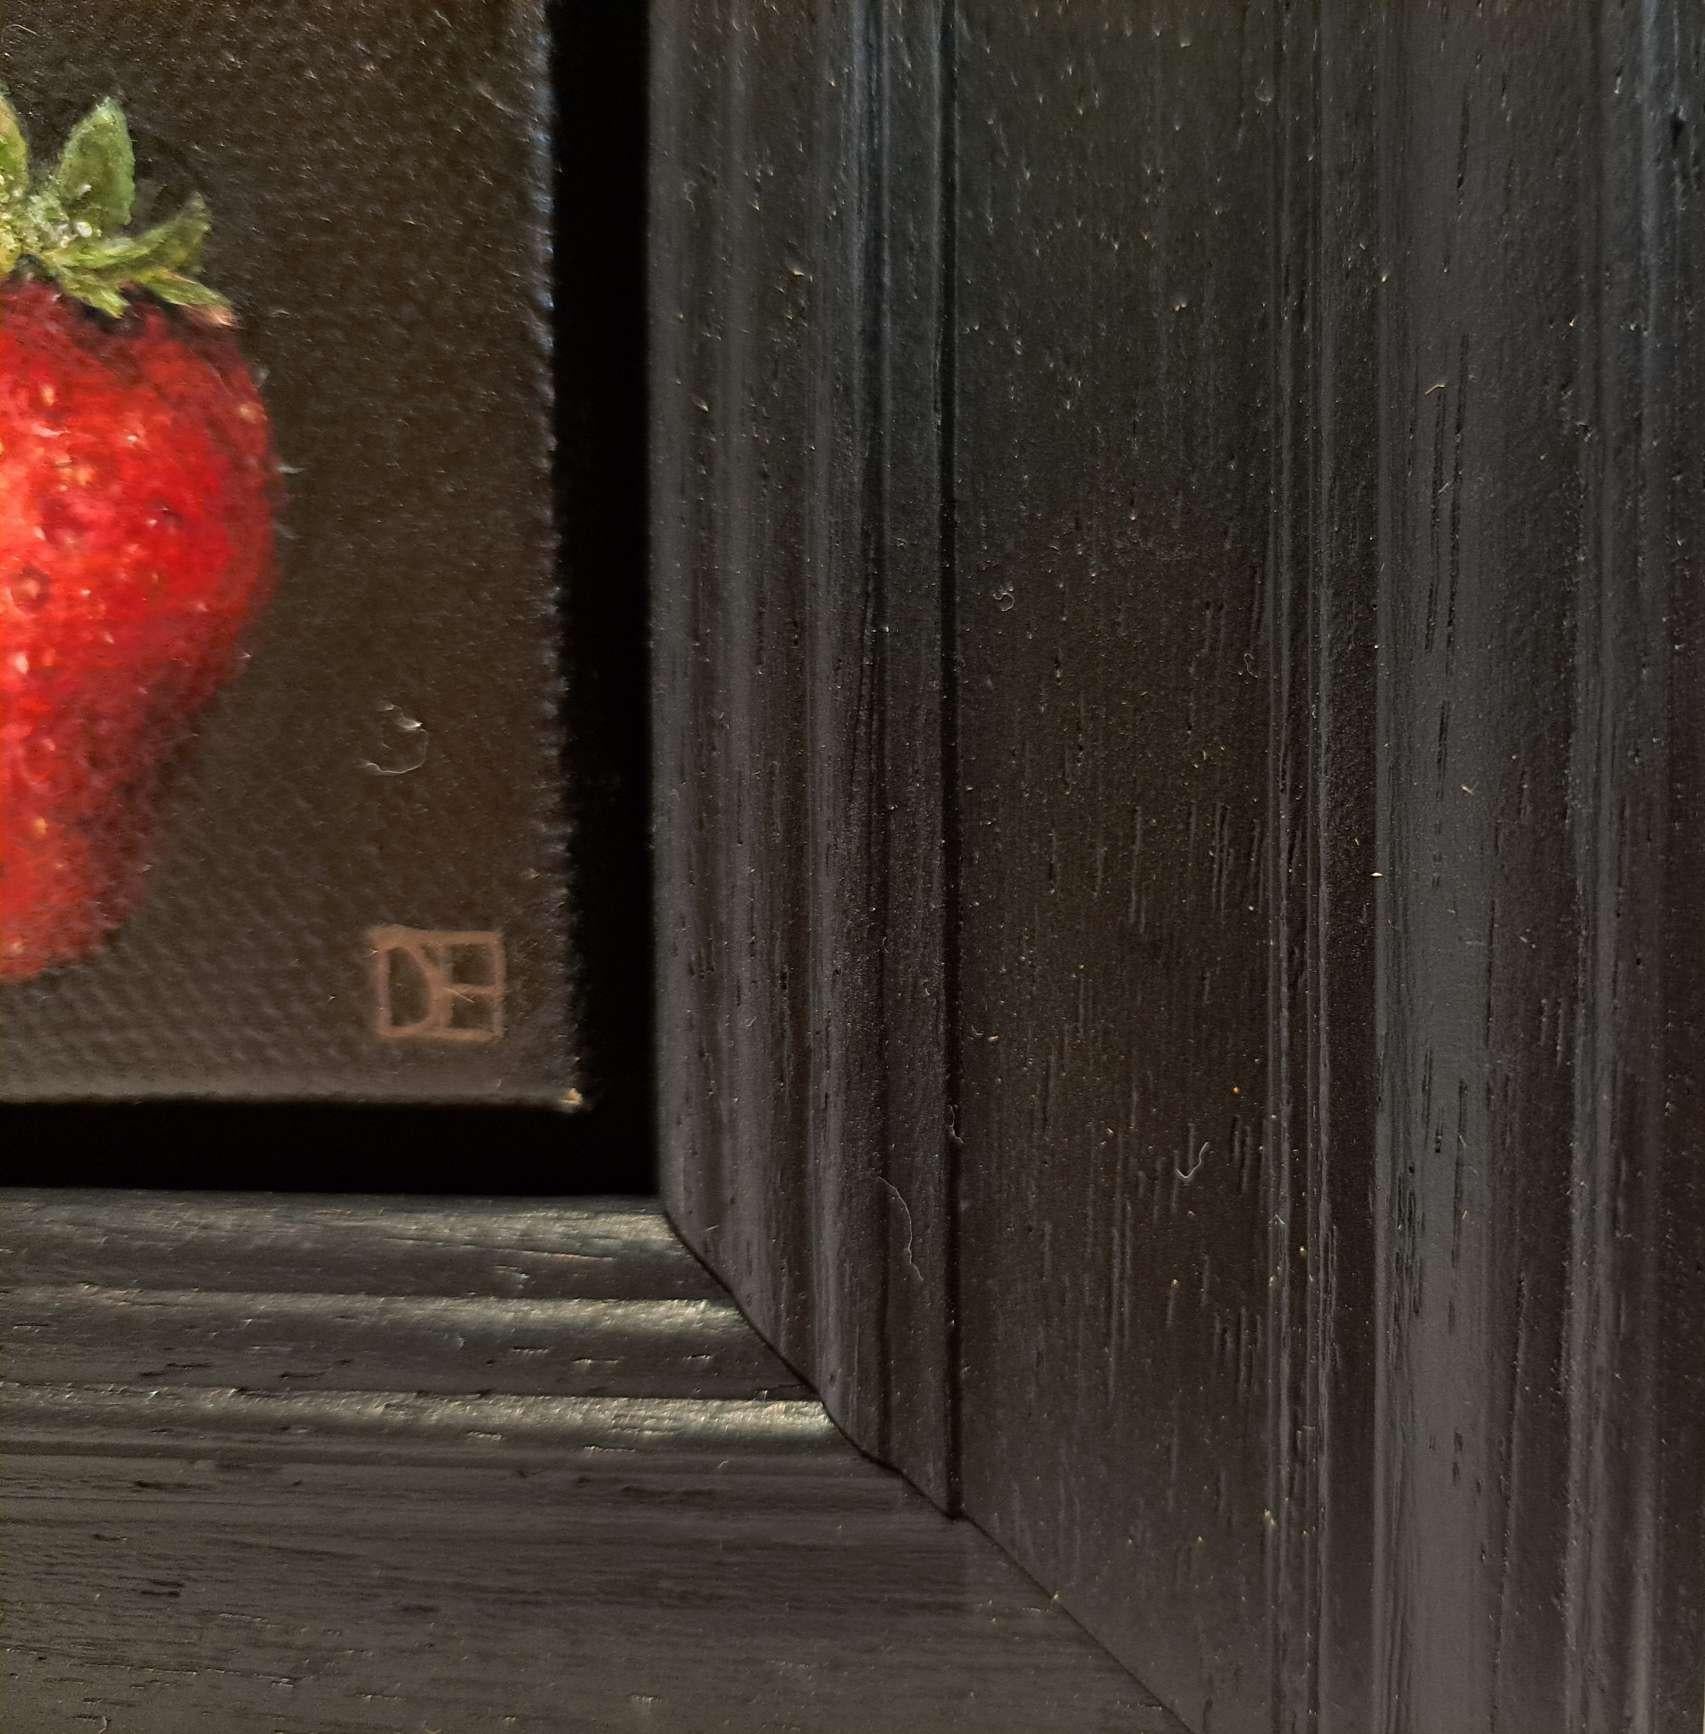 Pocket Crimson Strawberry 2 c ist ein Original-Ölgemälde von Dani Humberstone als Teil ihrer Pocket Painting-Serie, die realistische Ölgemälde in kleinem Maßstab mit einer Anspielung auf die barocke Stilllebenmalerei umfasst. Die Gemälde sind in